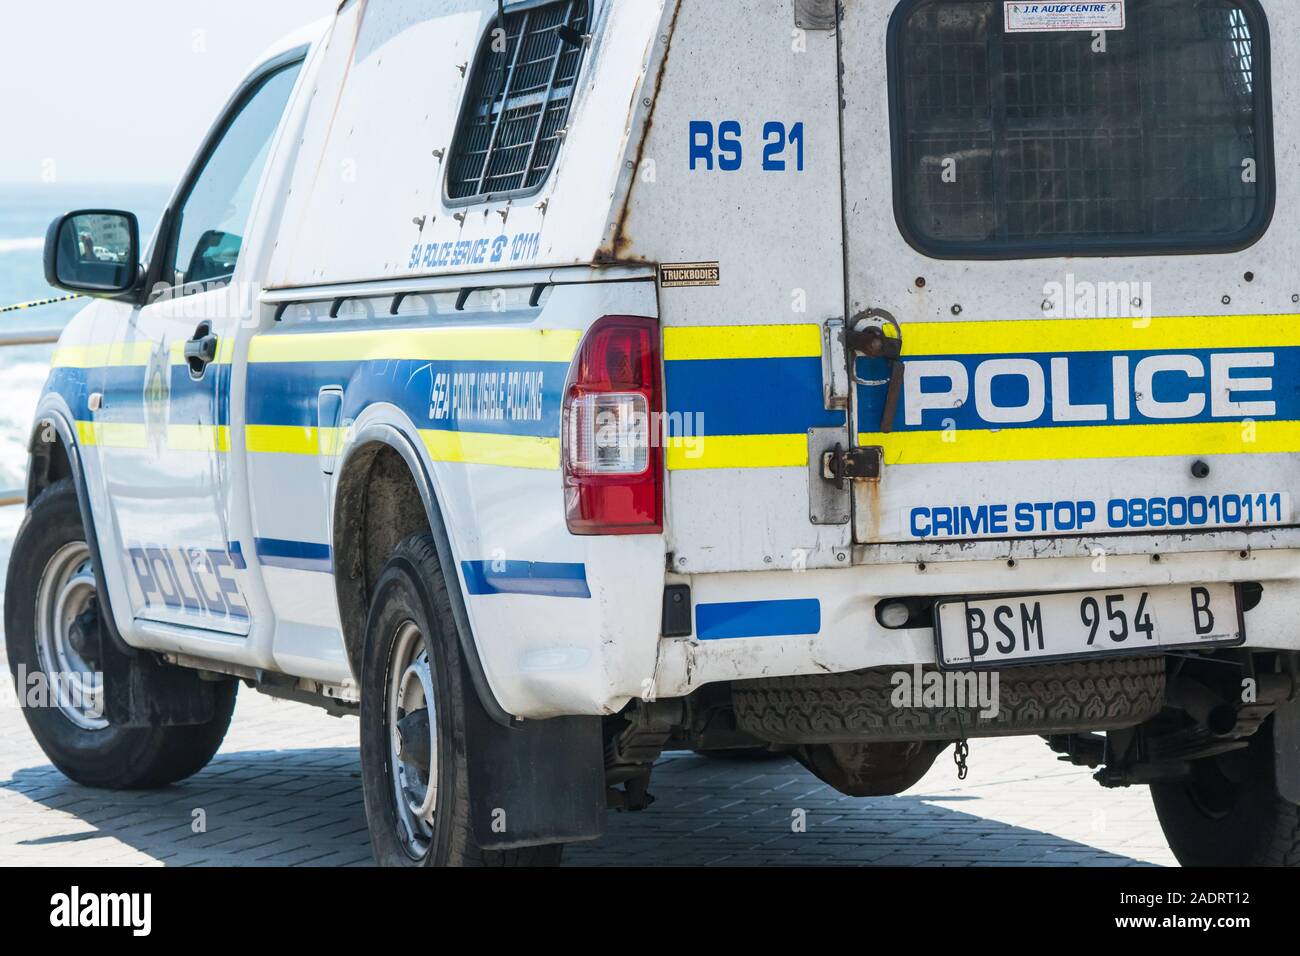 Polizia sudafricana van o il veicolo parcheggiato in strada il concetto di servizi di emergenza, della pubblica sicurezza, della legge e dell'ordine, la visibilità di polizia Foto Stock